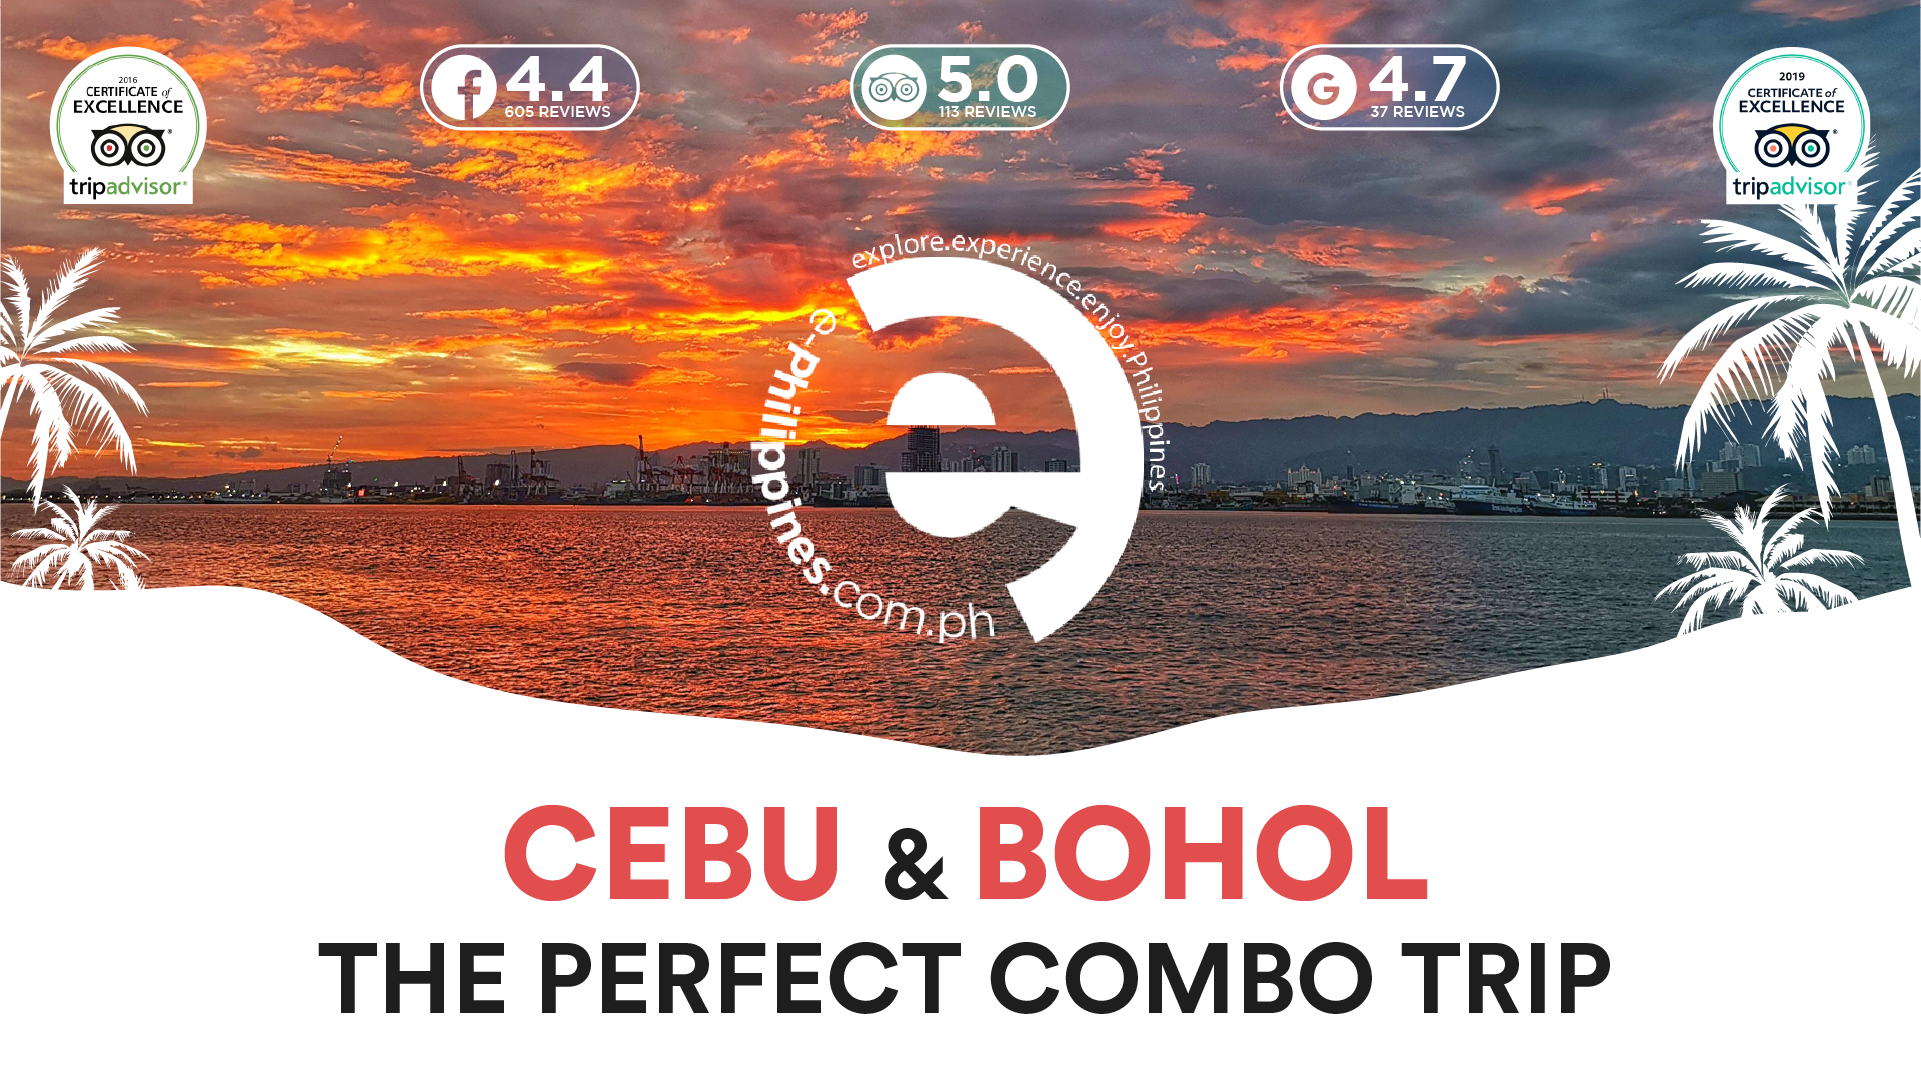 Cebu and Bohol